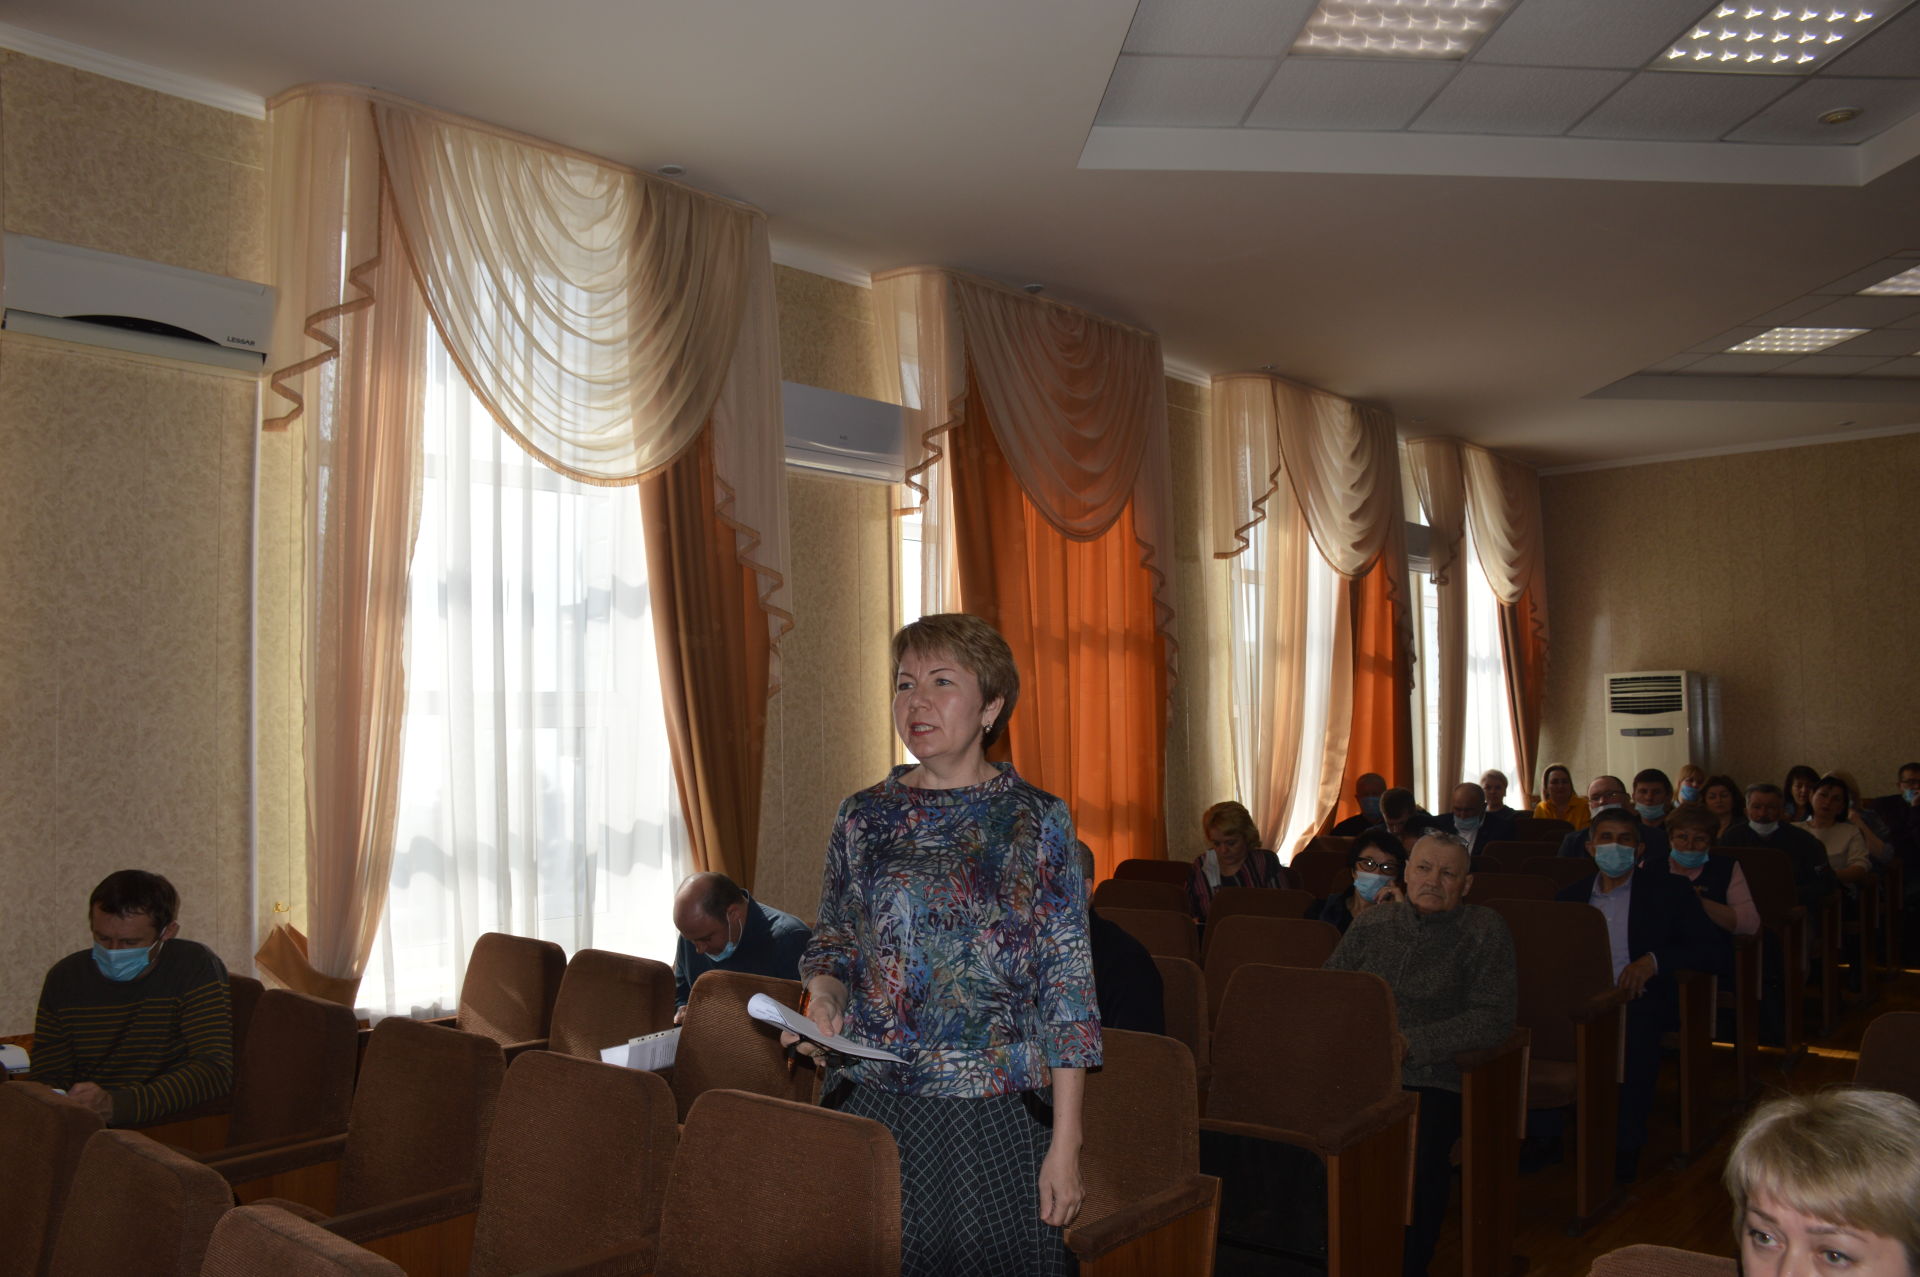 В Лаишево состоялось заседание районной комиссии по безопасности движения